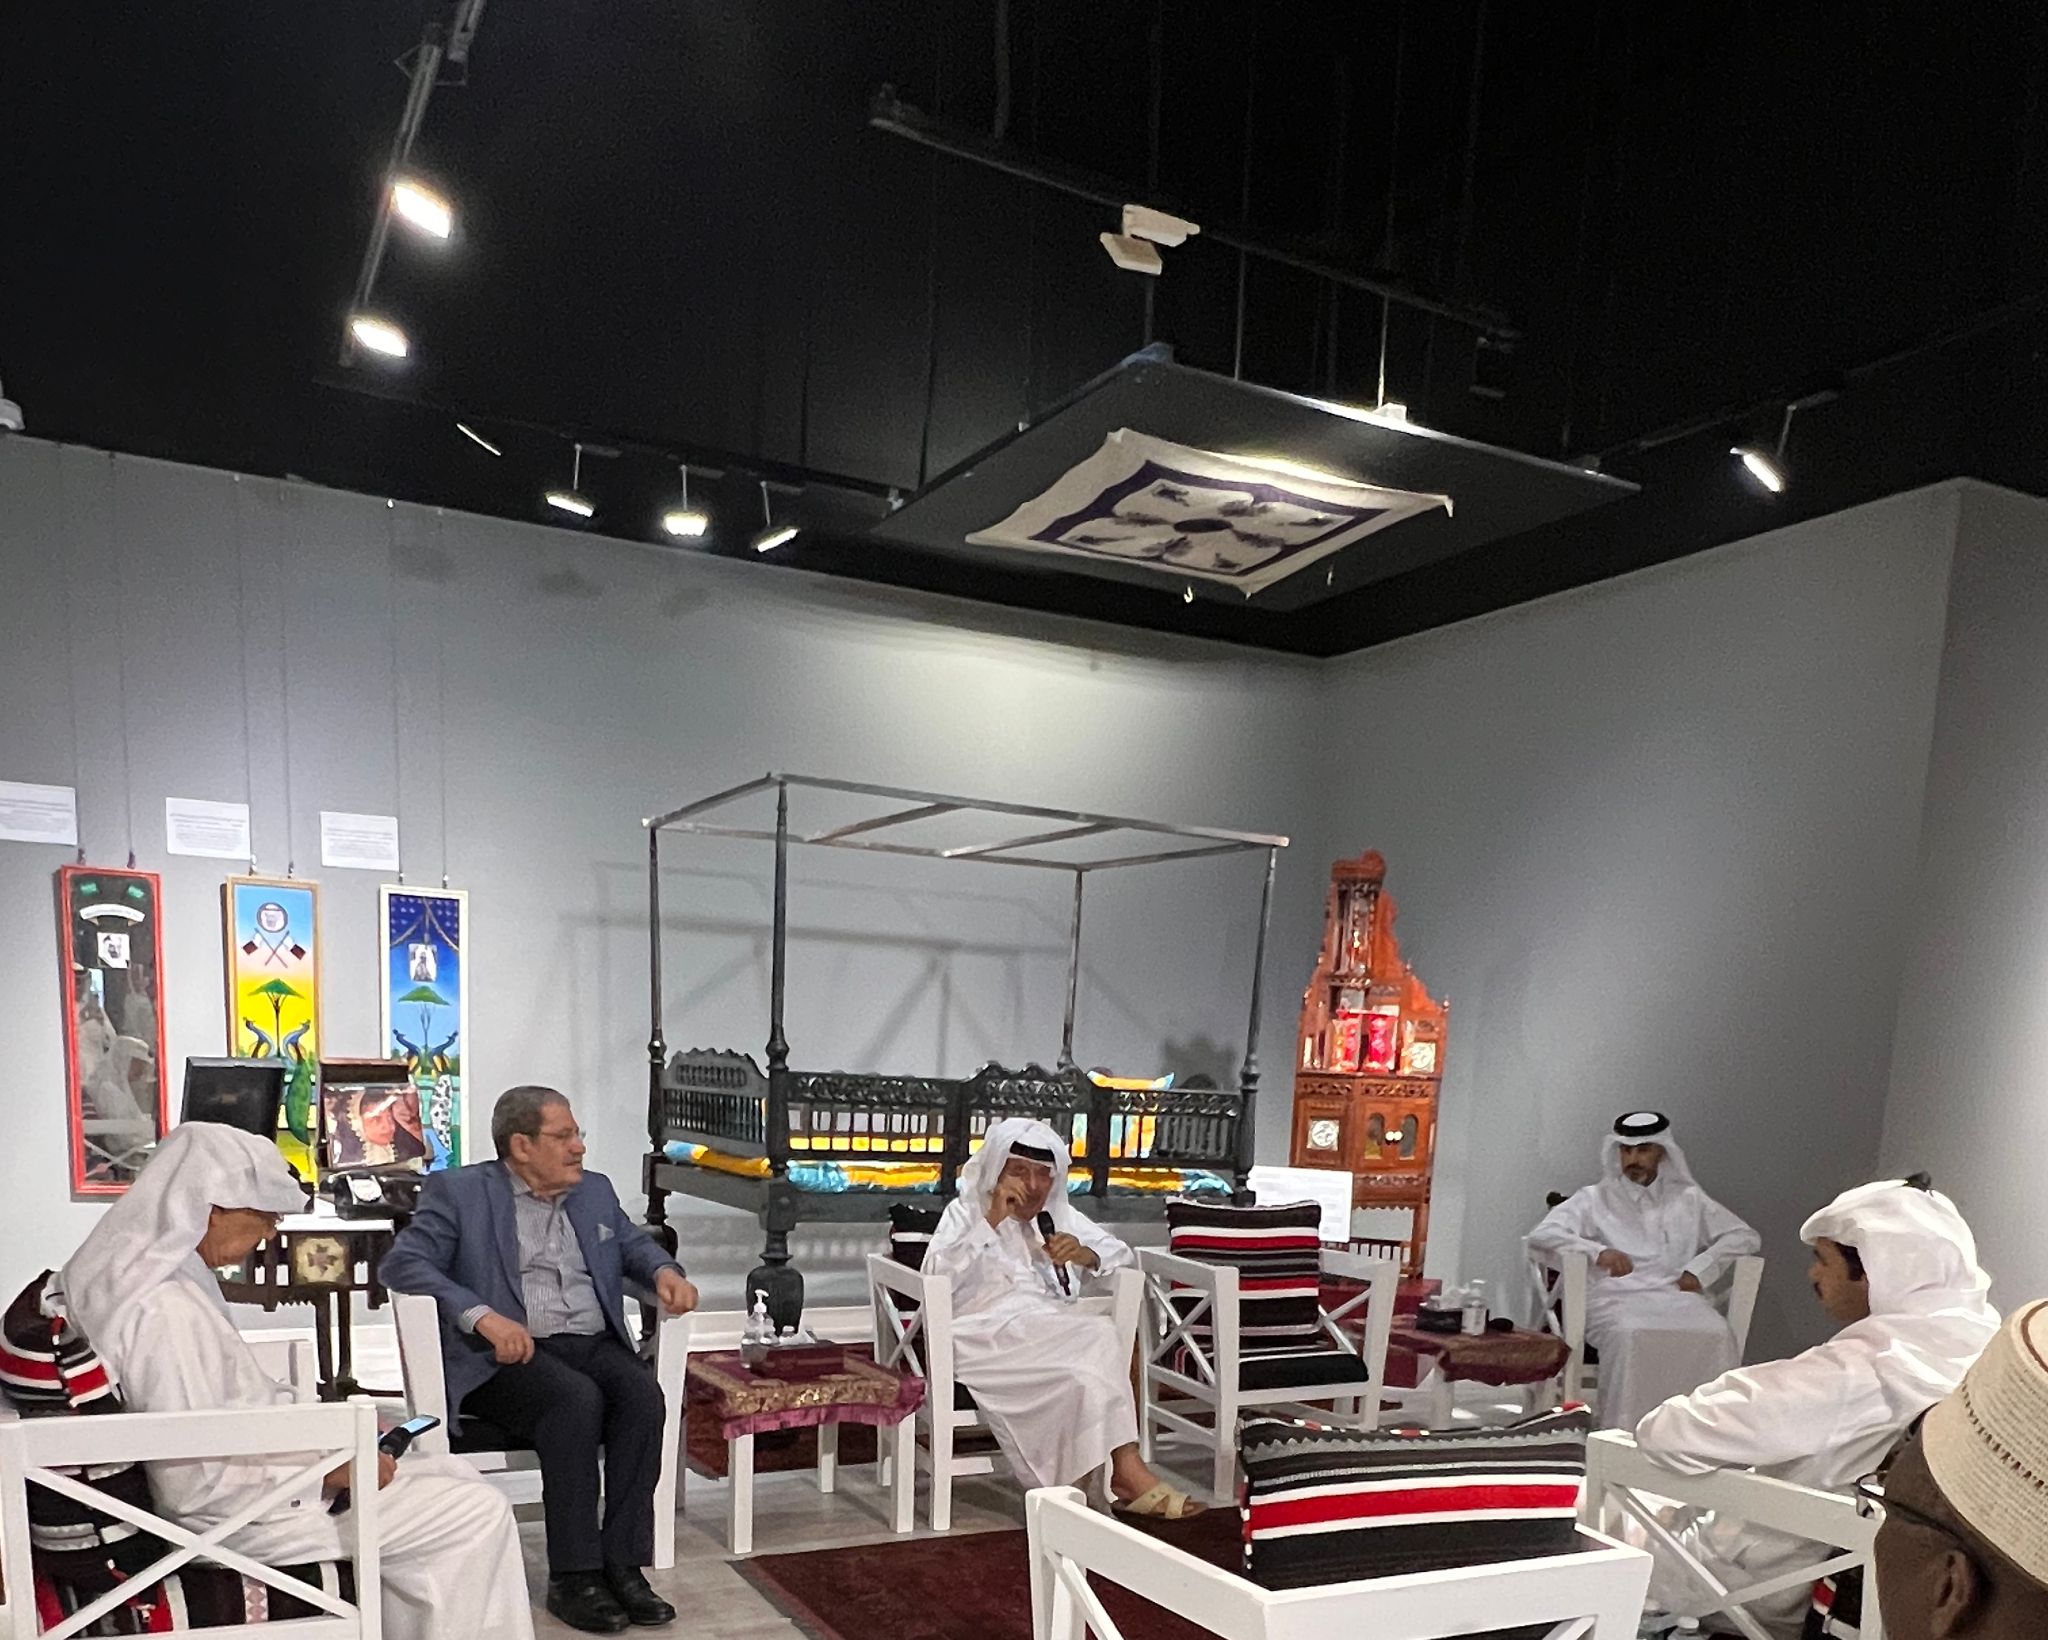 الملتقى الثقافي لمعرض كنوز من التراث لمجموعة متحف عبدالله الغانم